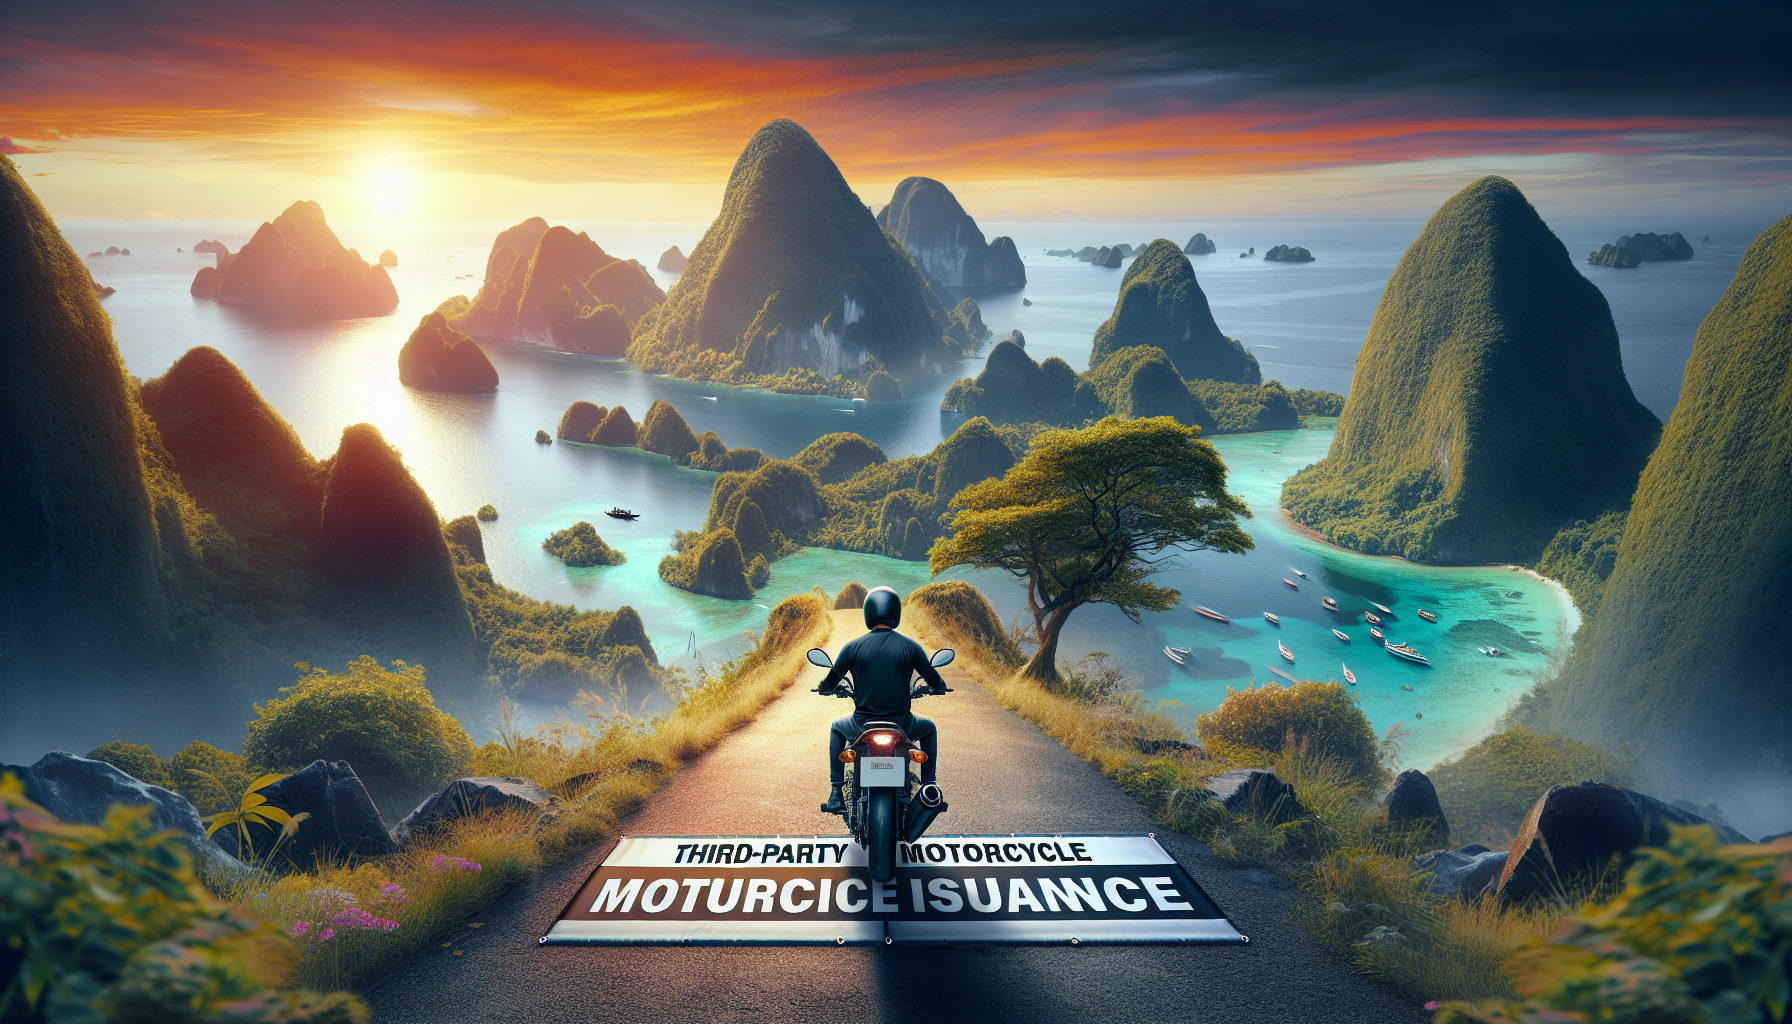 découvrez l'assurance moto au tiers à la réunion pour vous protéger sur les routes de l'île. obtenez une couverture adaptée pour votre moto avec notre offre d'assurance moto à la réunion.